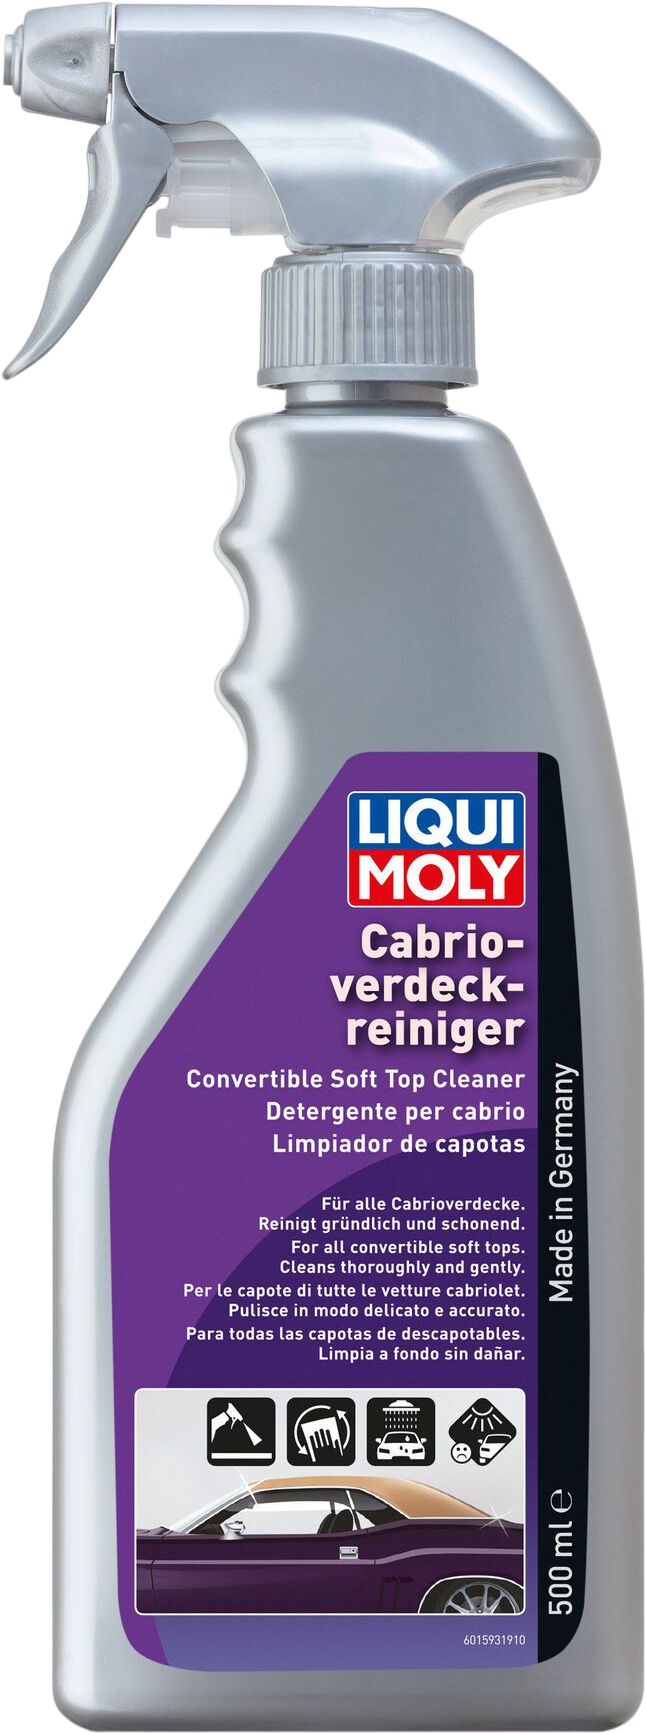 Liqui Moly Cabriokapreiniger, 6 x 500 ml detail 2